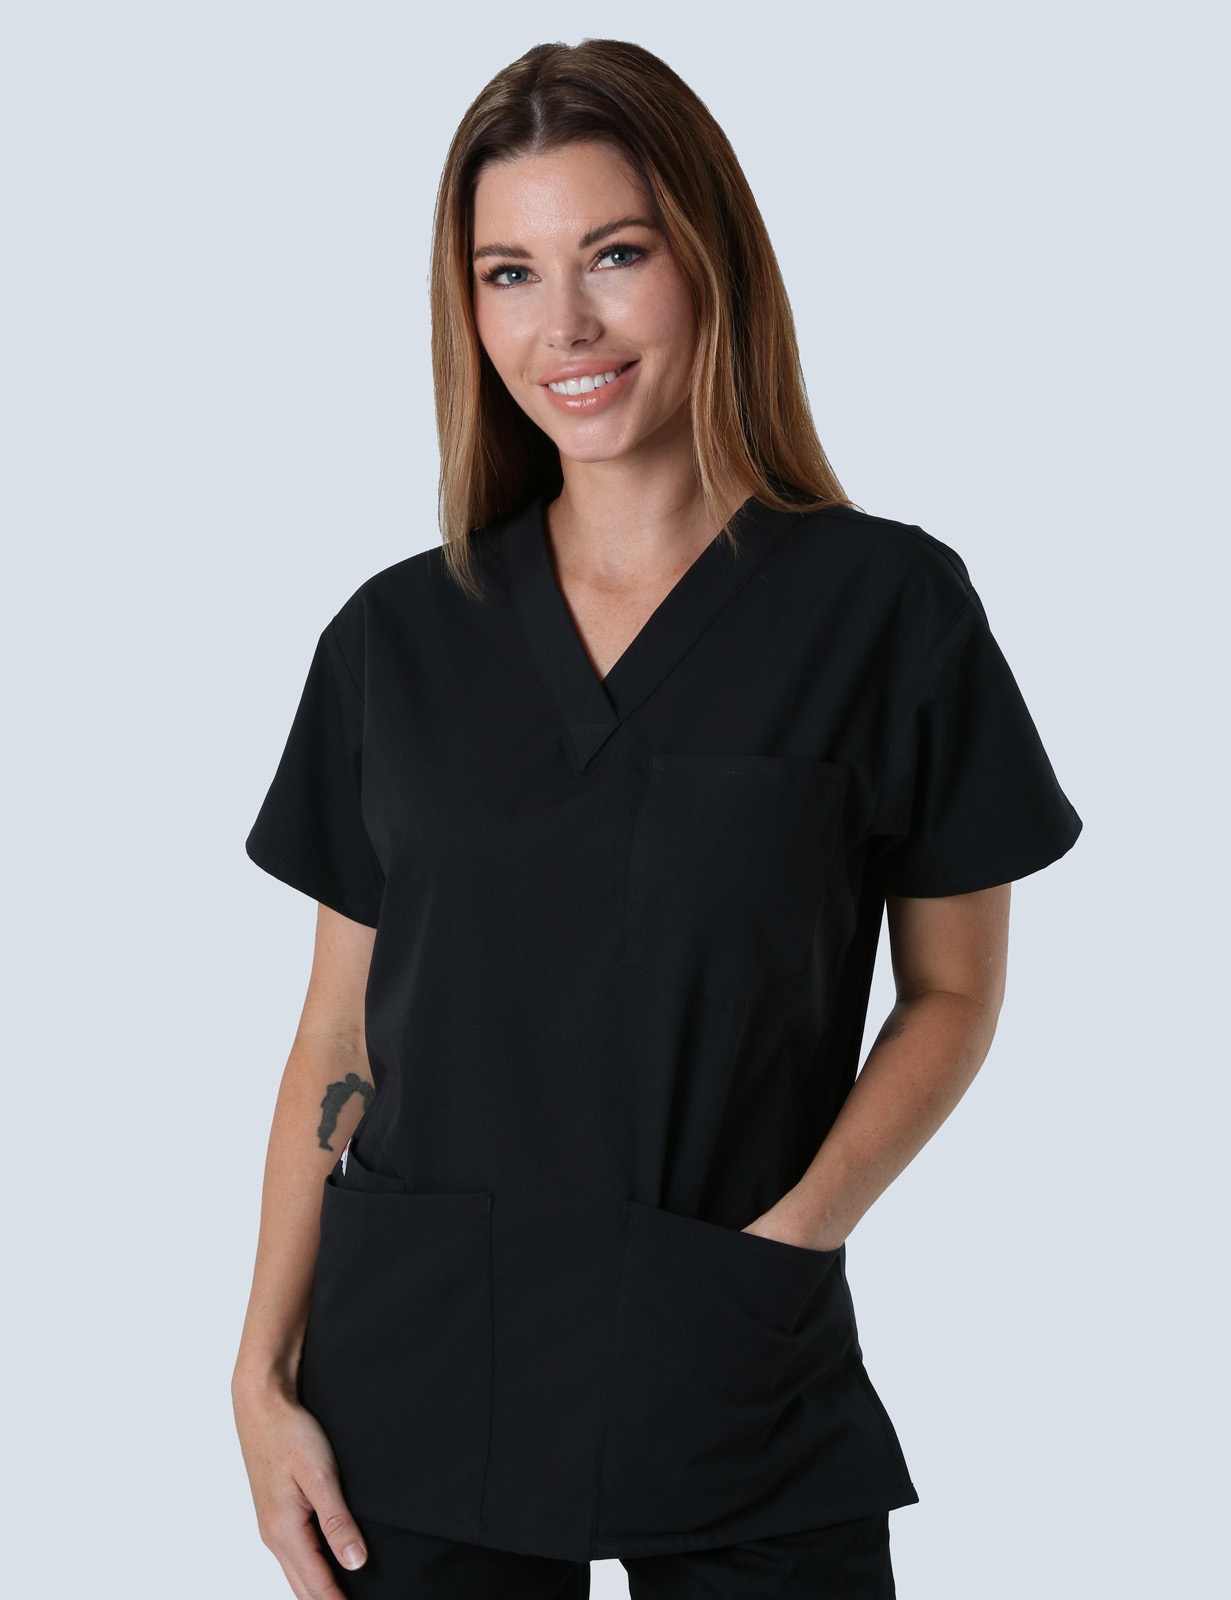 Registered Nurse Uniform Set Bundle - (4 Pocket Top with Cargo Pants in Black incl Logos)